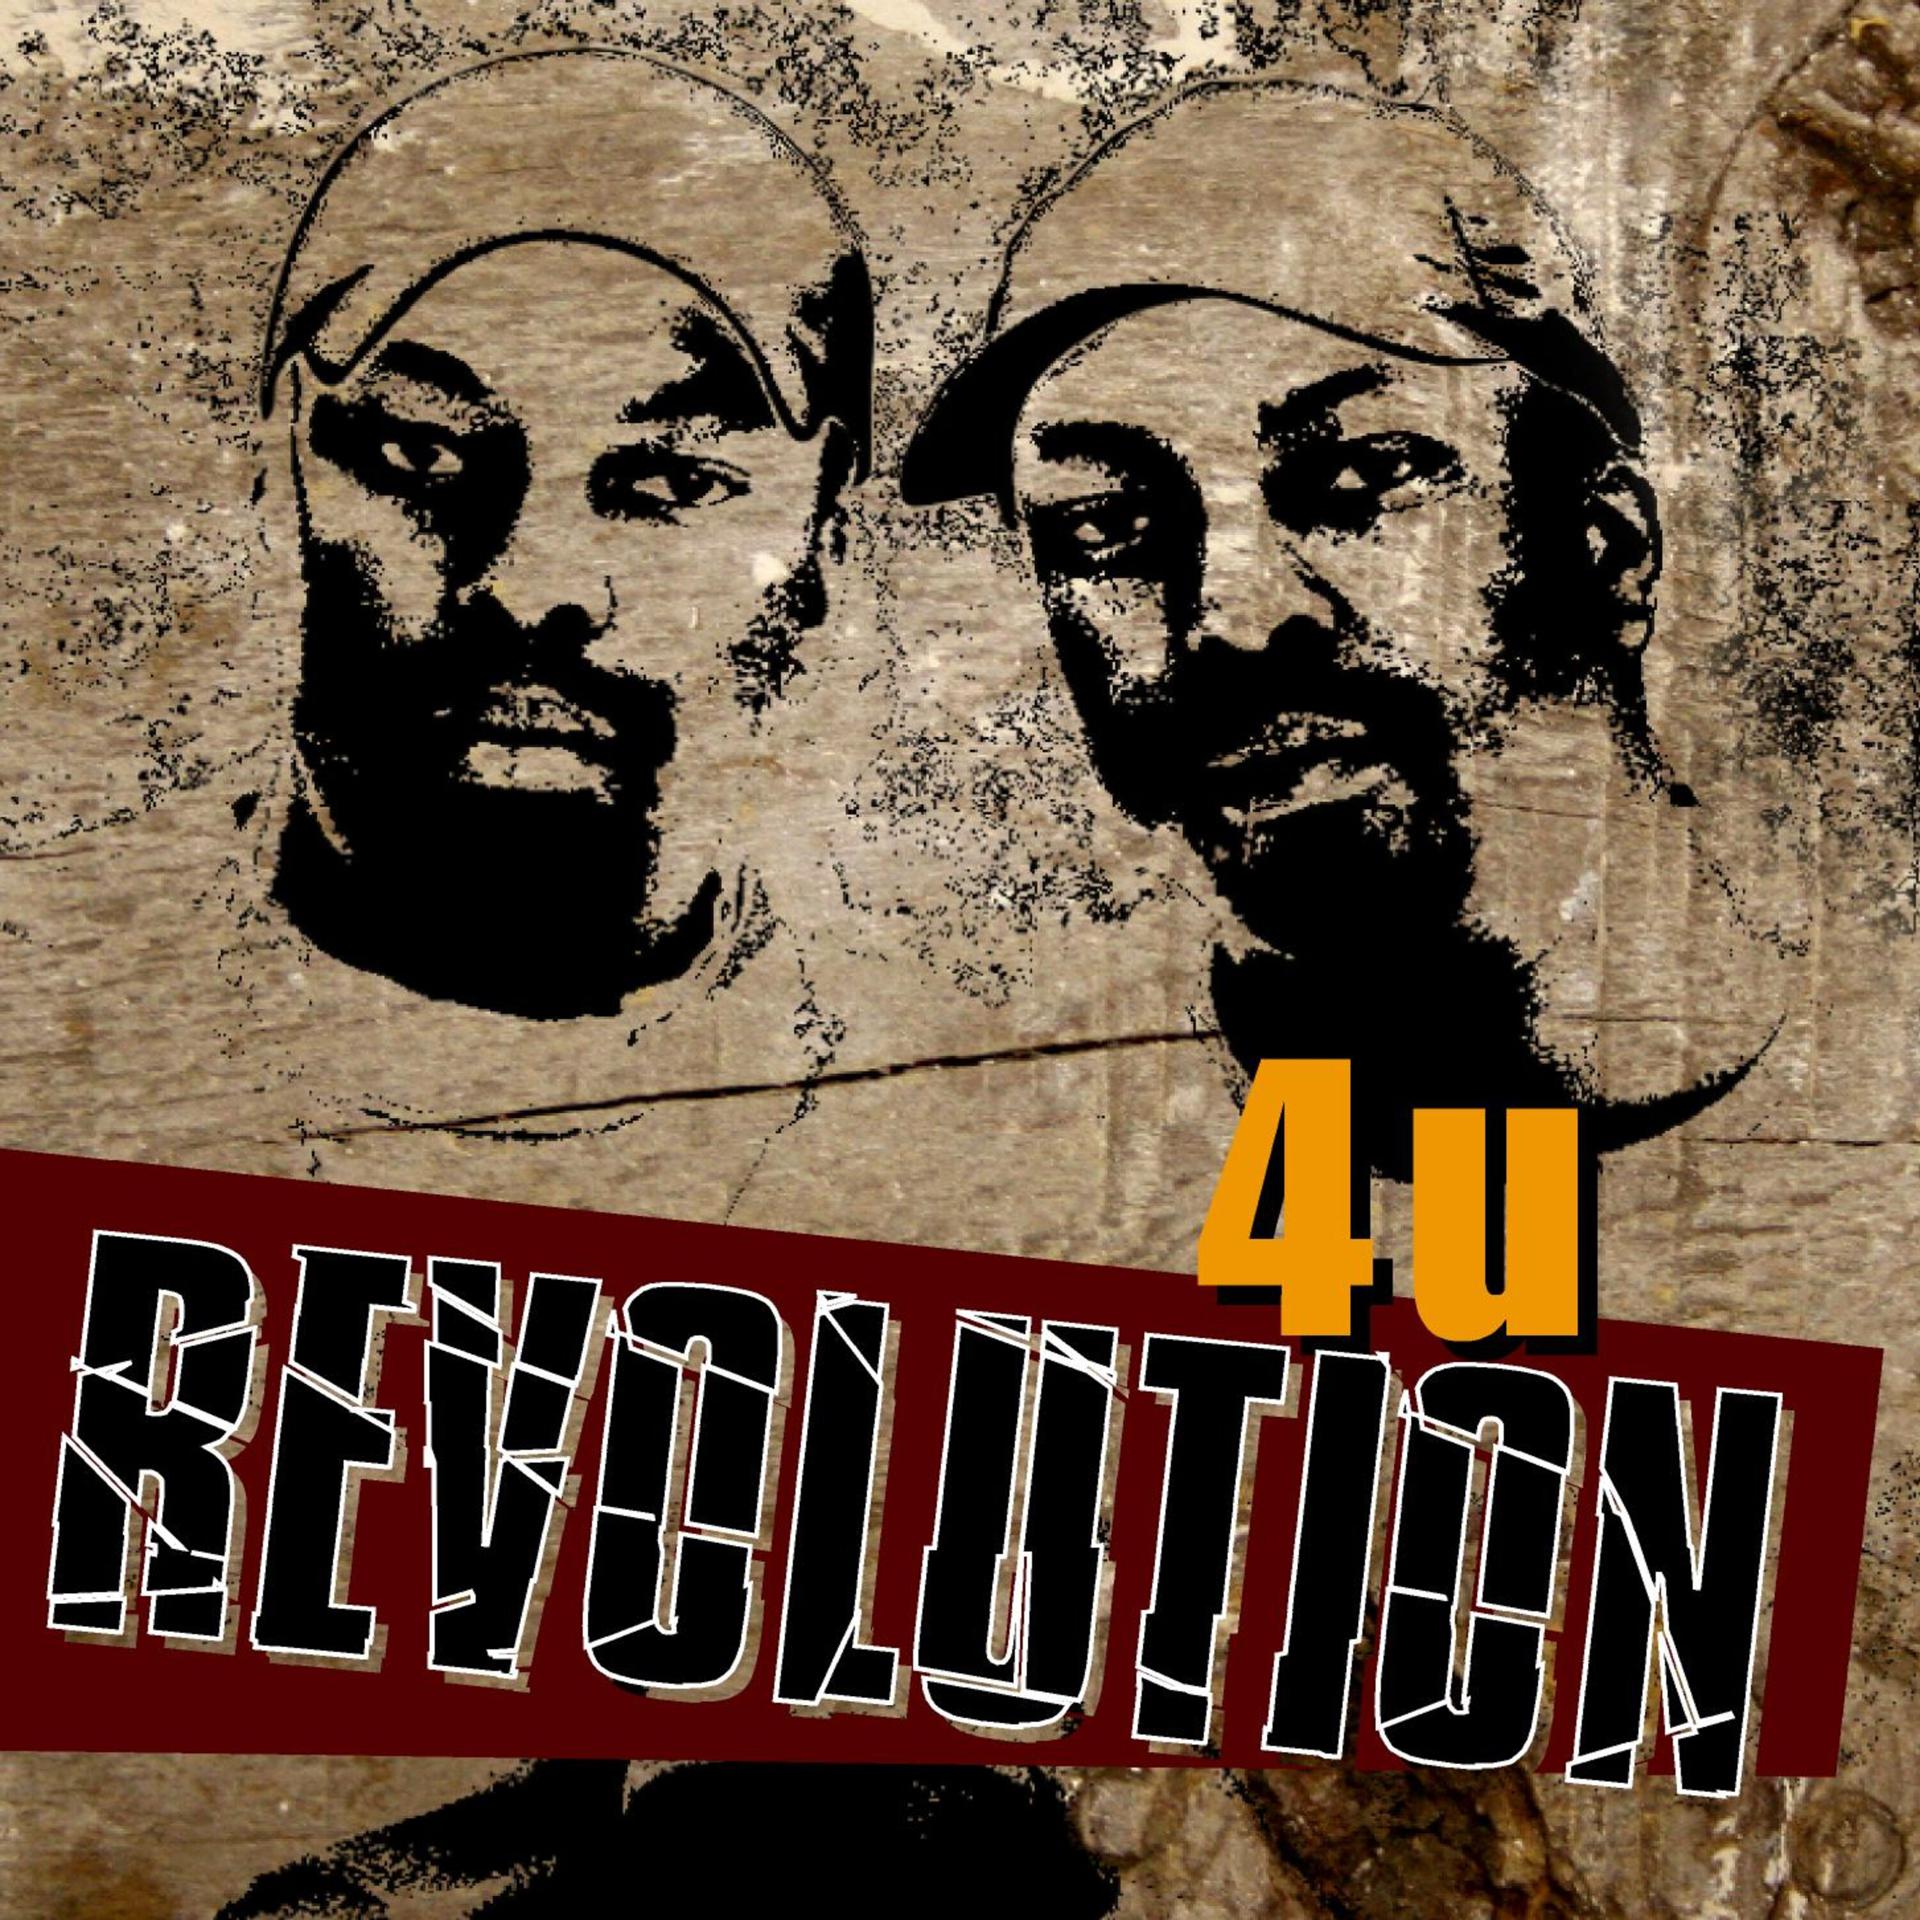 Revolution музыка